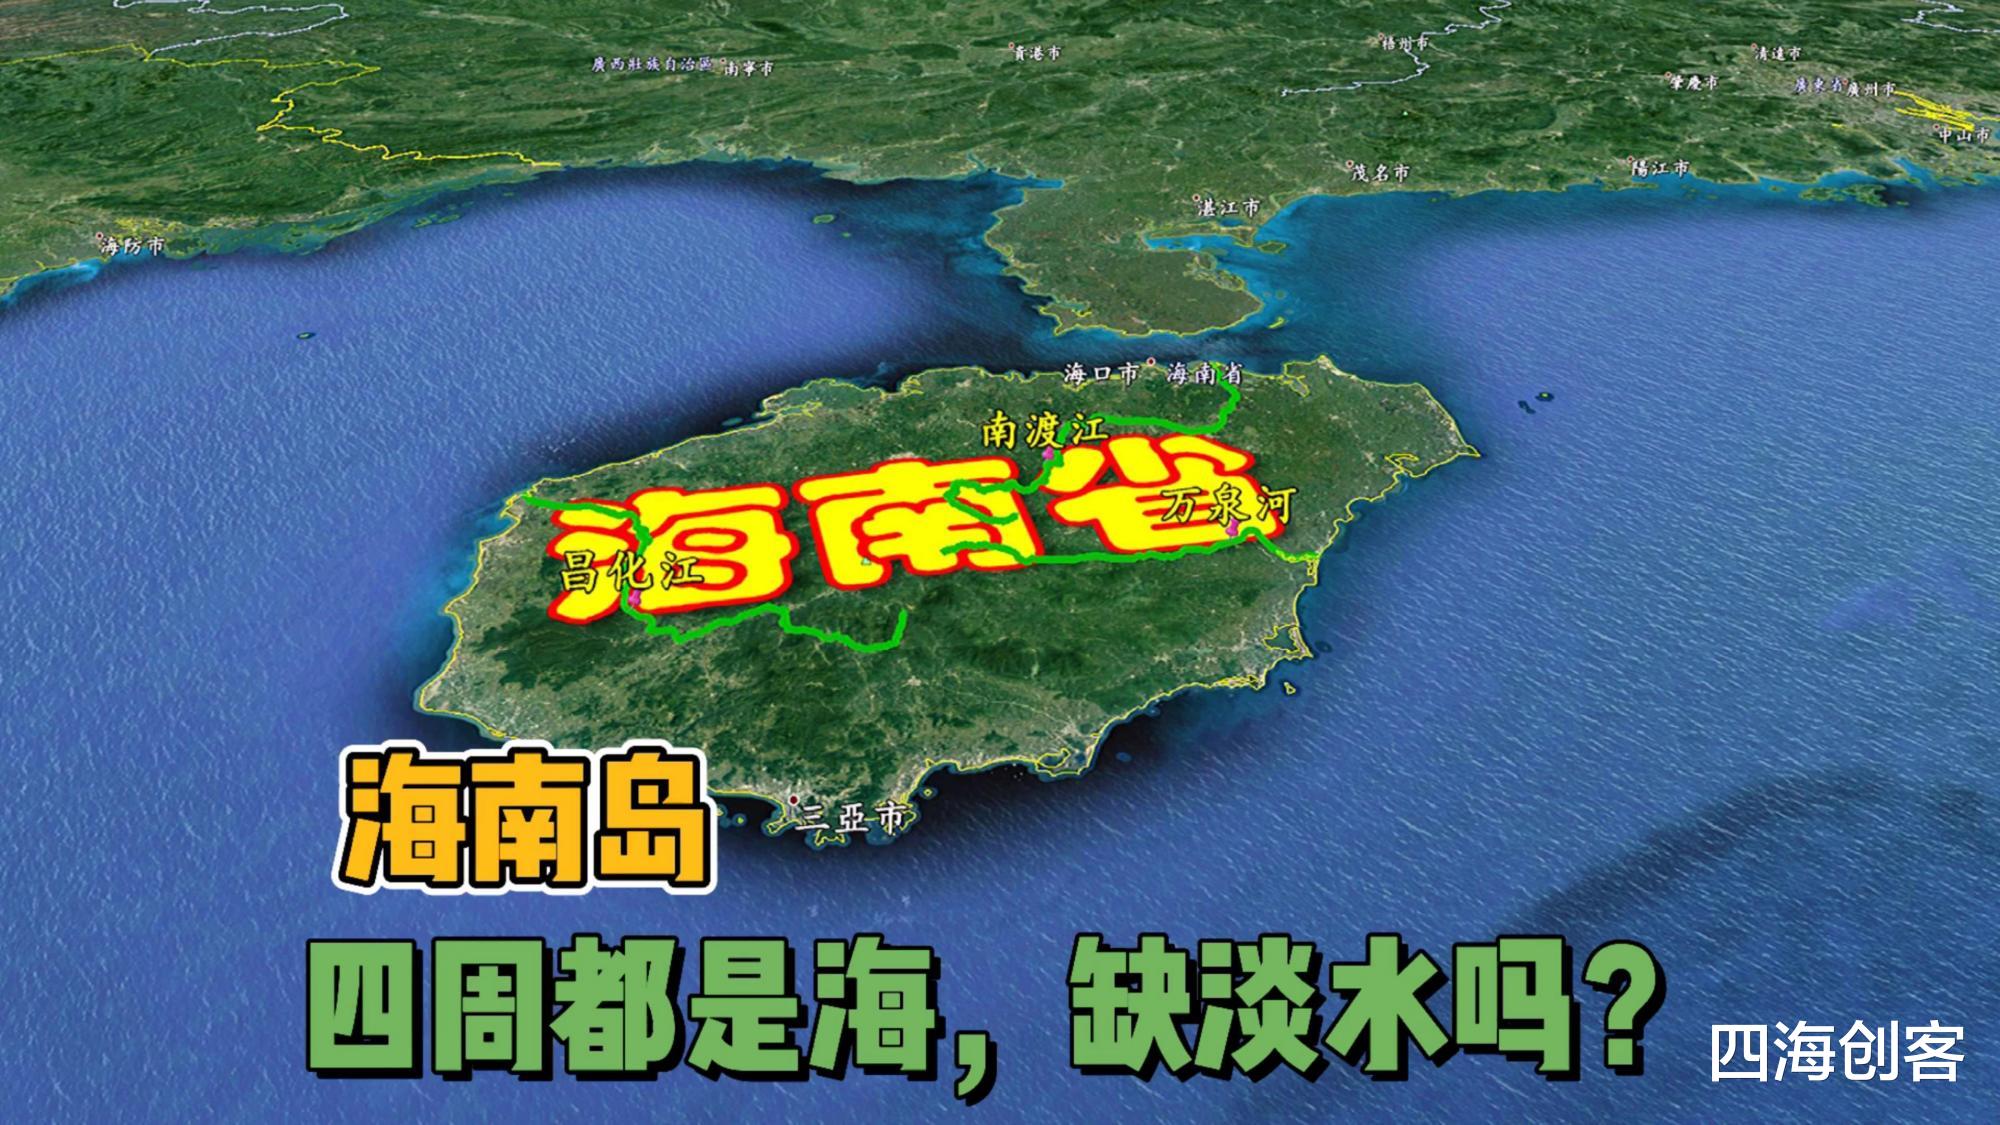 台湾 海南岛淡水从何而来，需要大陆供给吗？别逗了，海南岛不是台湾岛